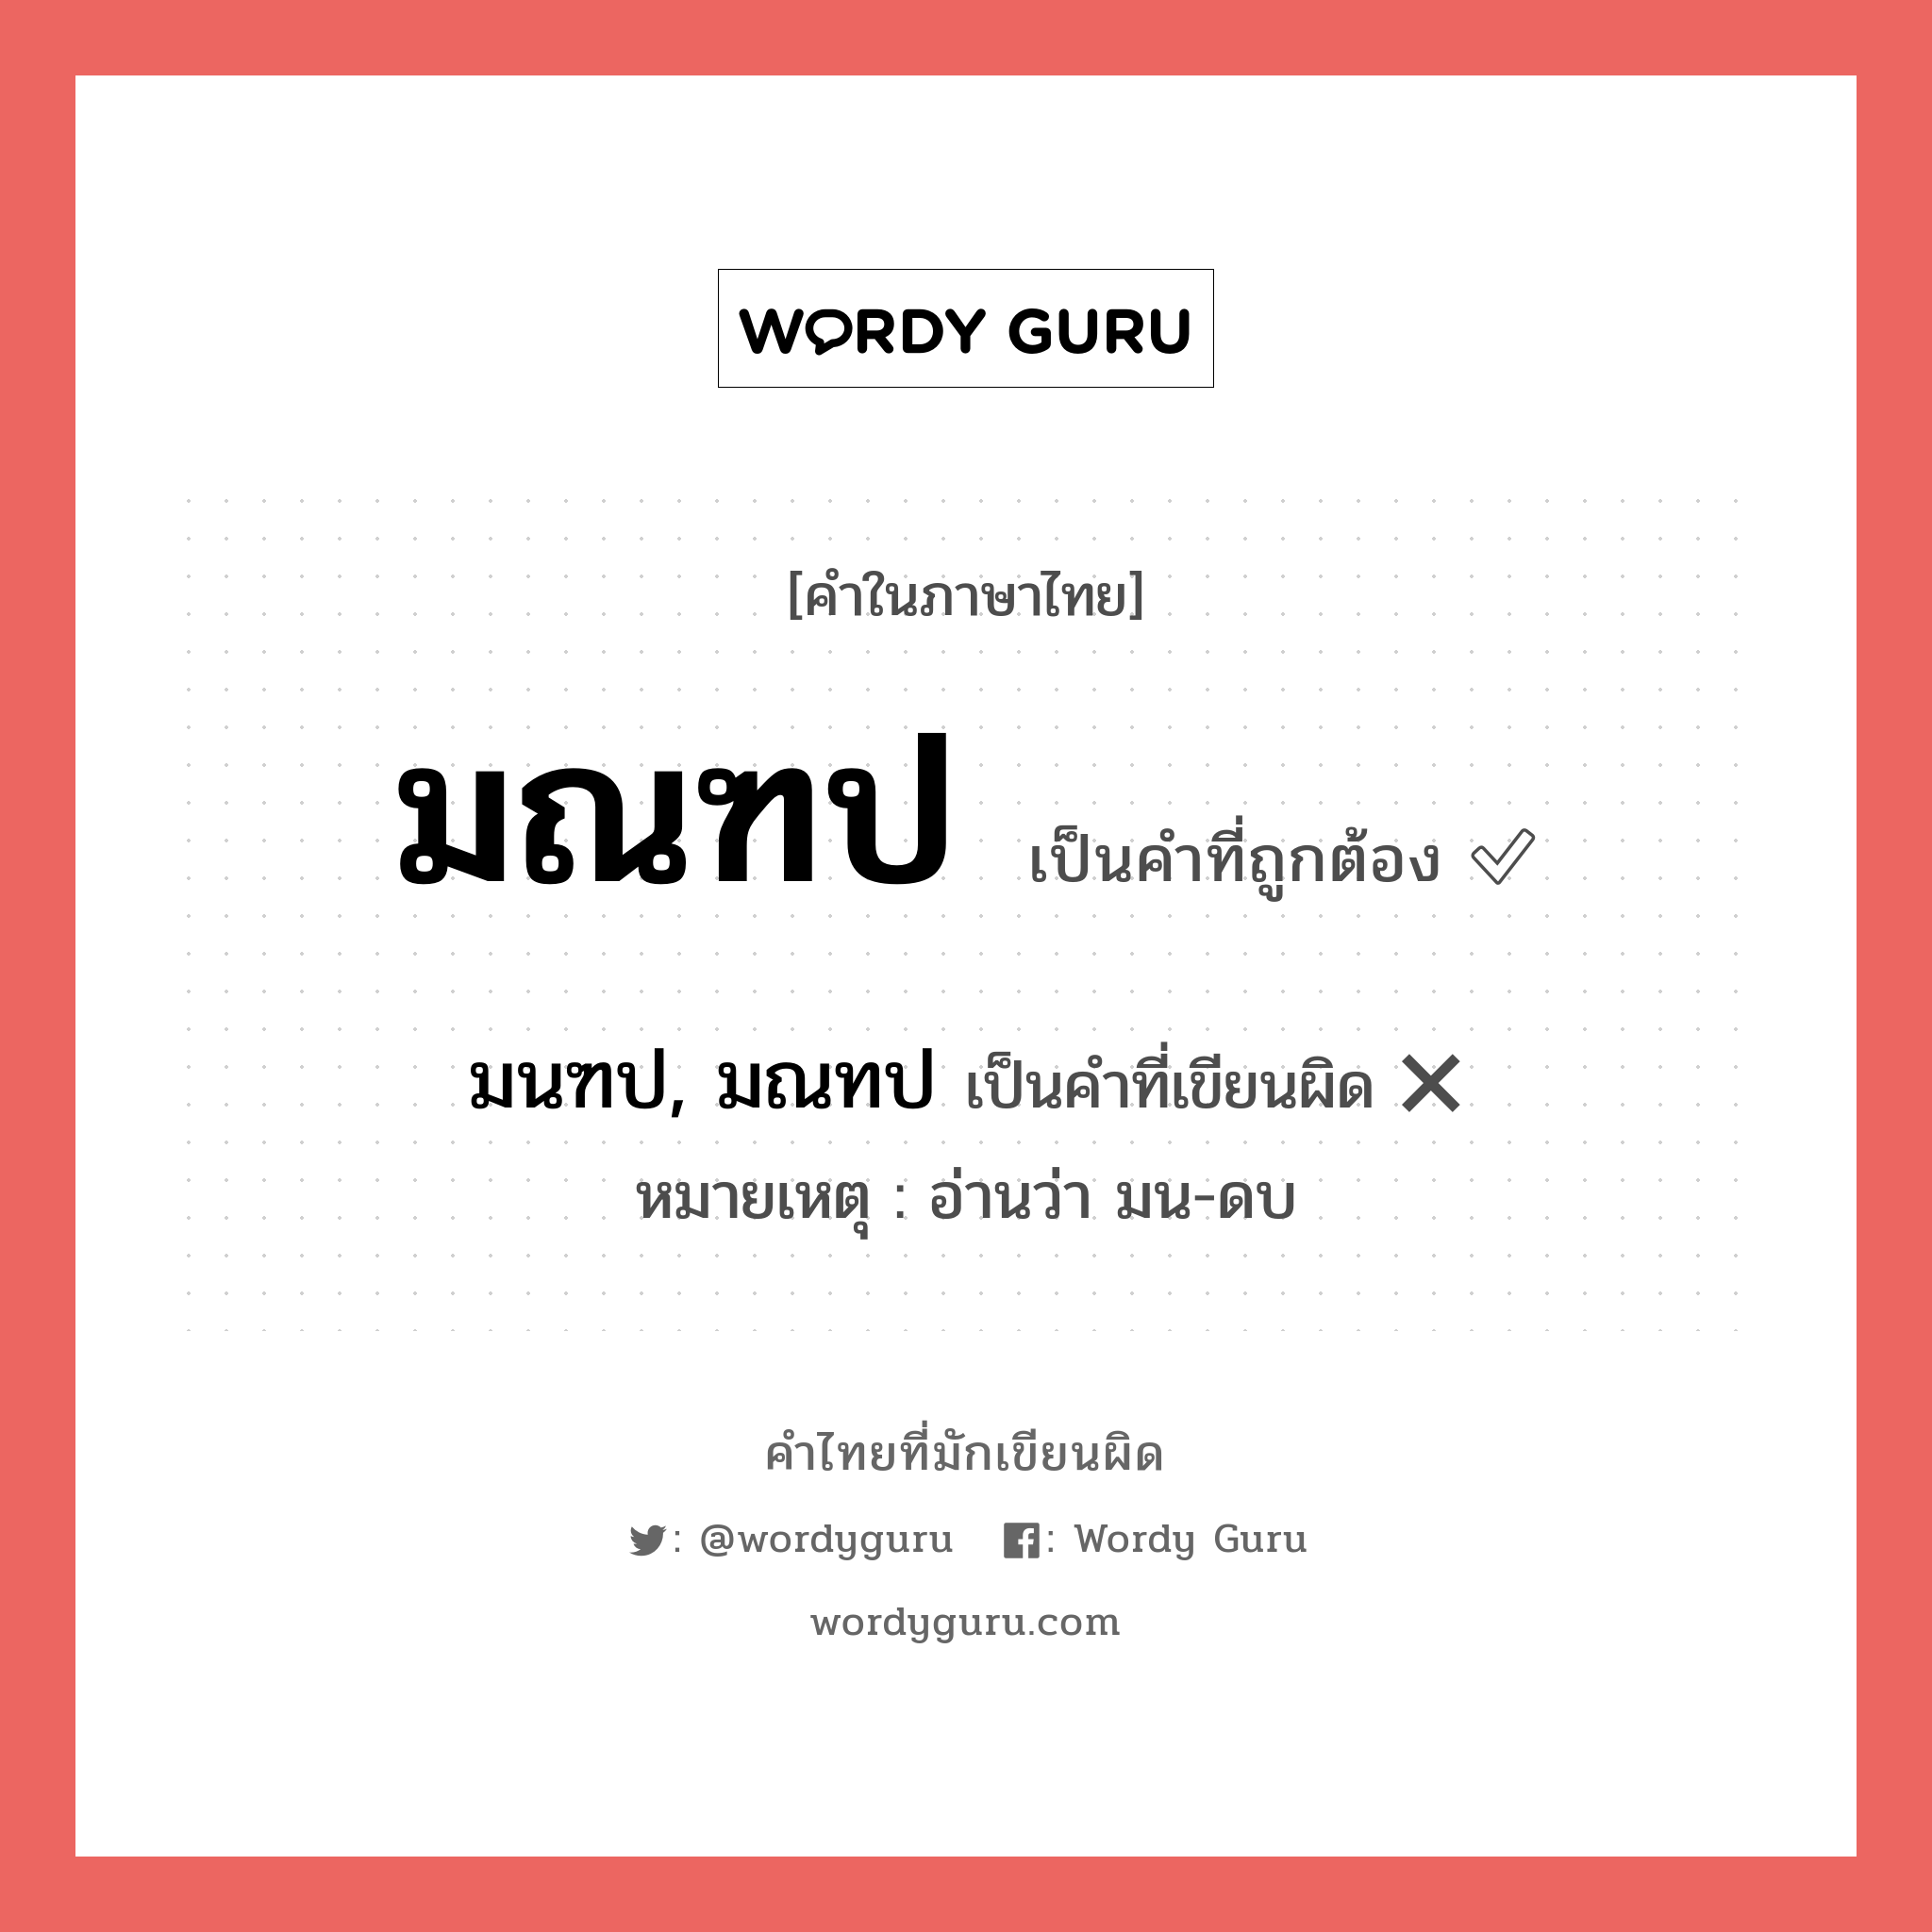 มนฑป, มณทป หรือ มณฑป คำไหนเขียนถูก?, คำในภาษาไทยที่มักเขียนผิด มนฑป, มณทป คำที่ผิด ❌ มณฑป หมายเหตุ อ่านว่า มน-ดบ